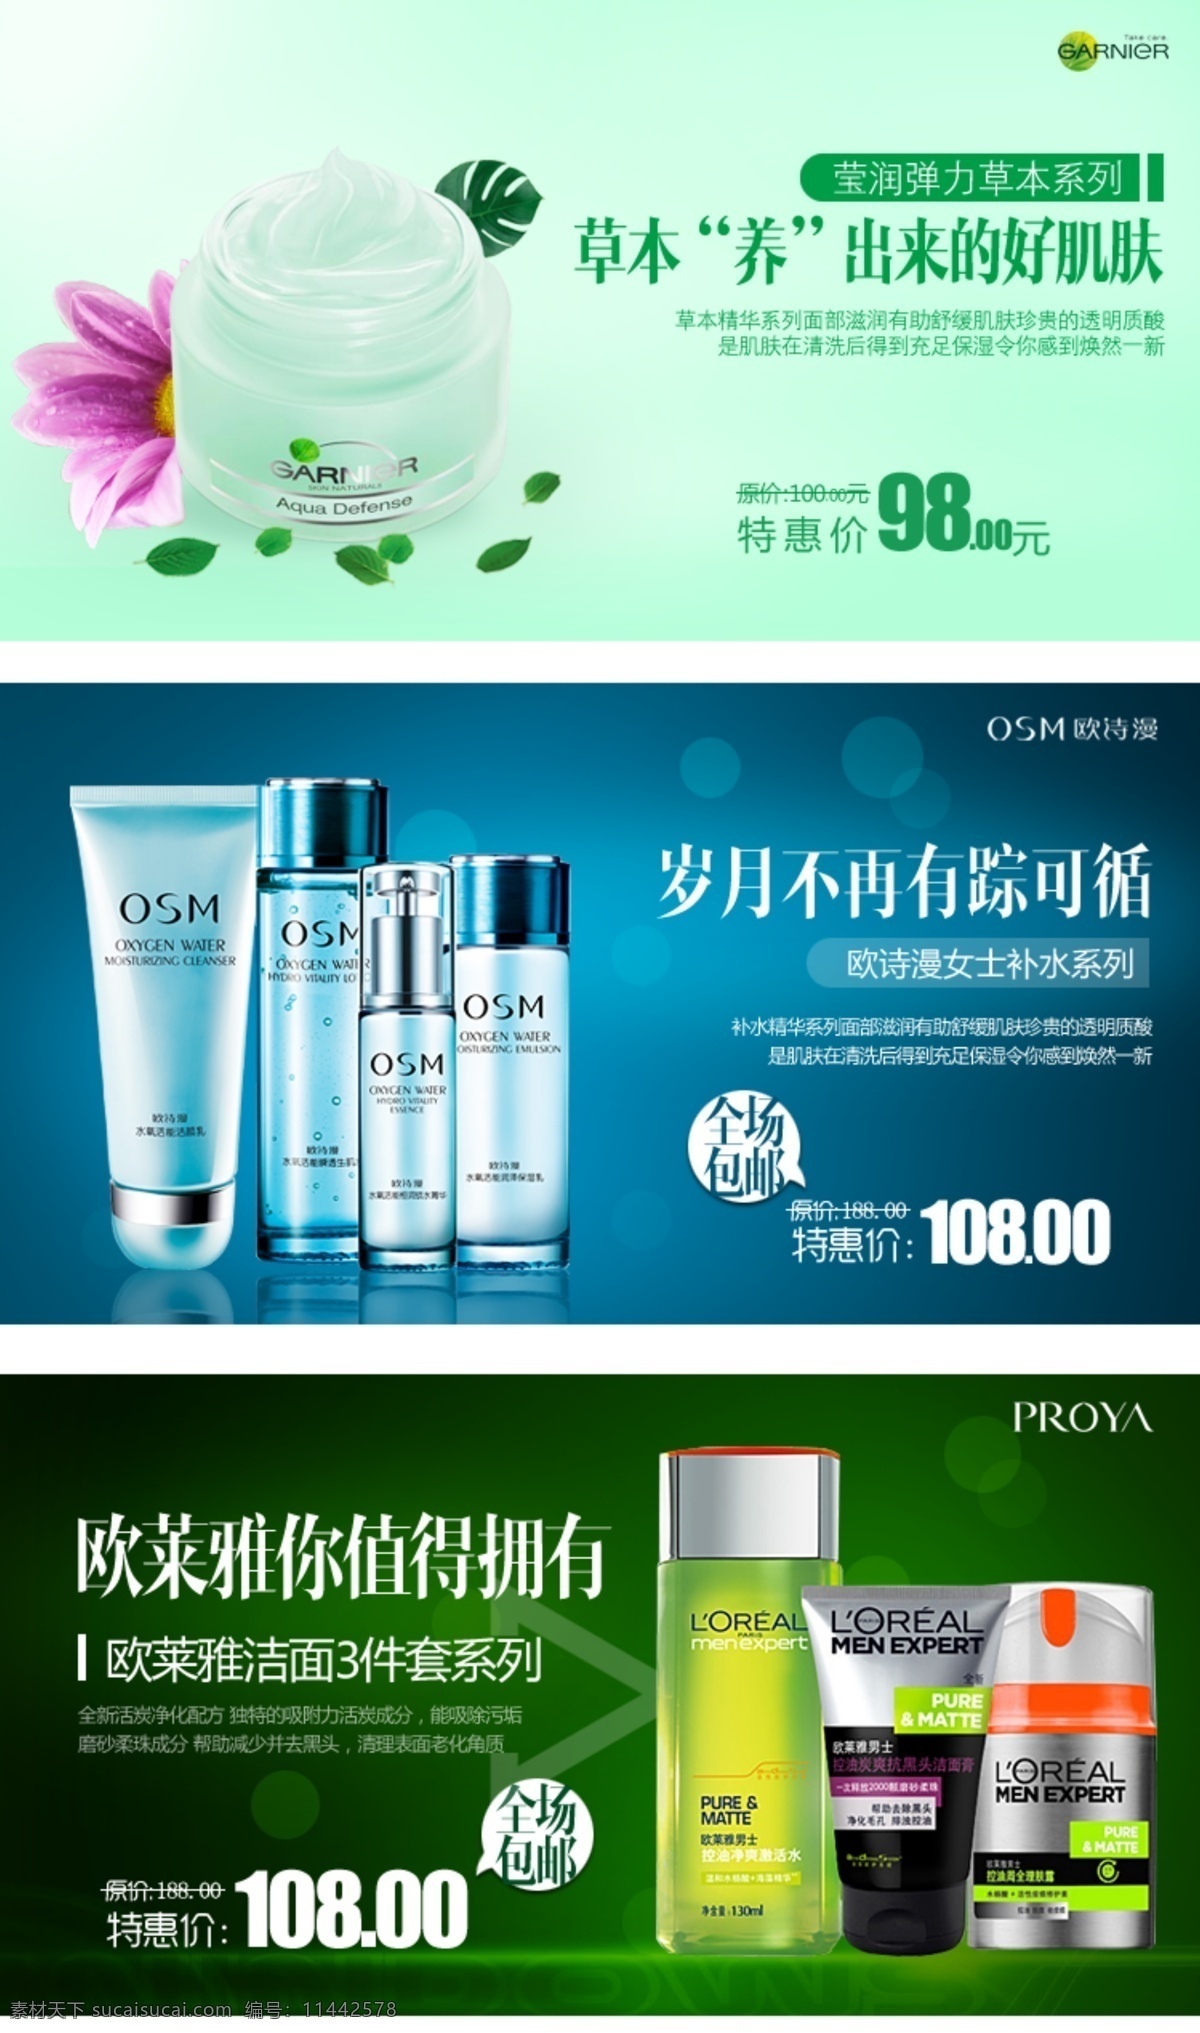 护肤品 广告语 中文模版 网页模板 源文件